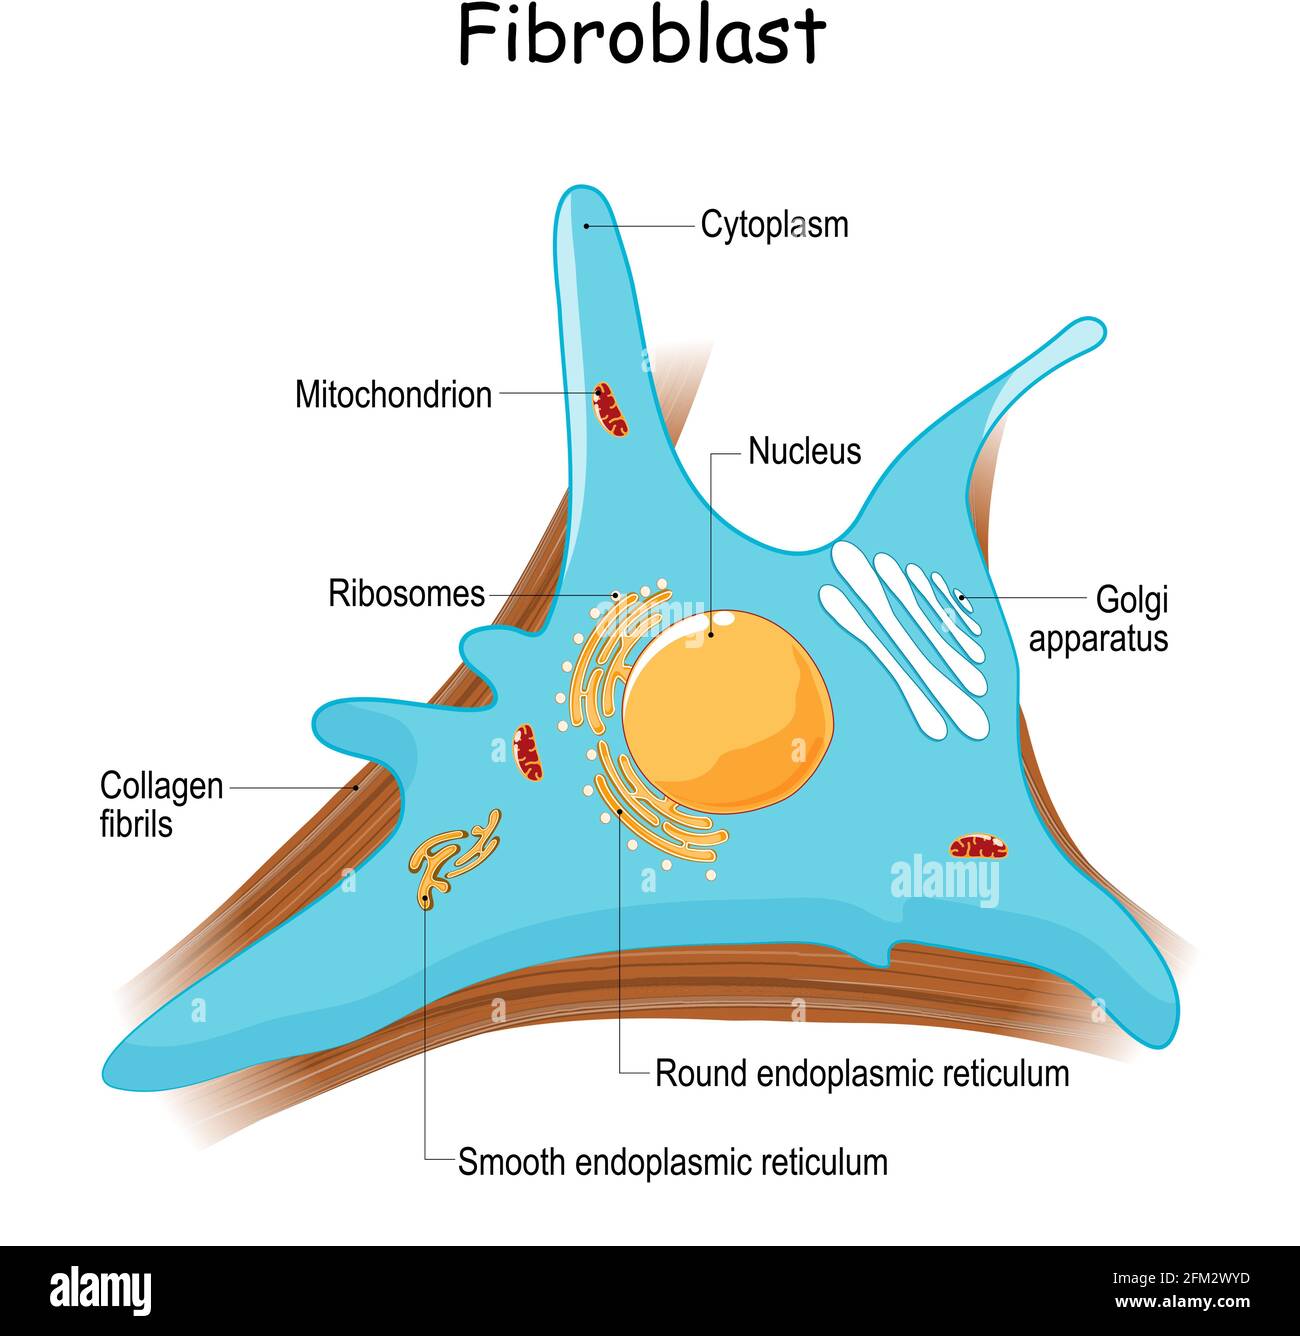 anatomia di fibroblasti. primo piano con fibrille di collagene e organelle. Diagramma con apparato golgi, nucleo, mitocondrio e ribosomi. Vettore Illustrazione Vettoriale